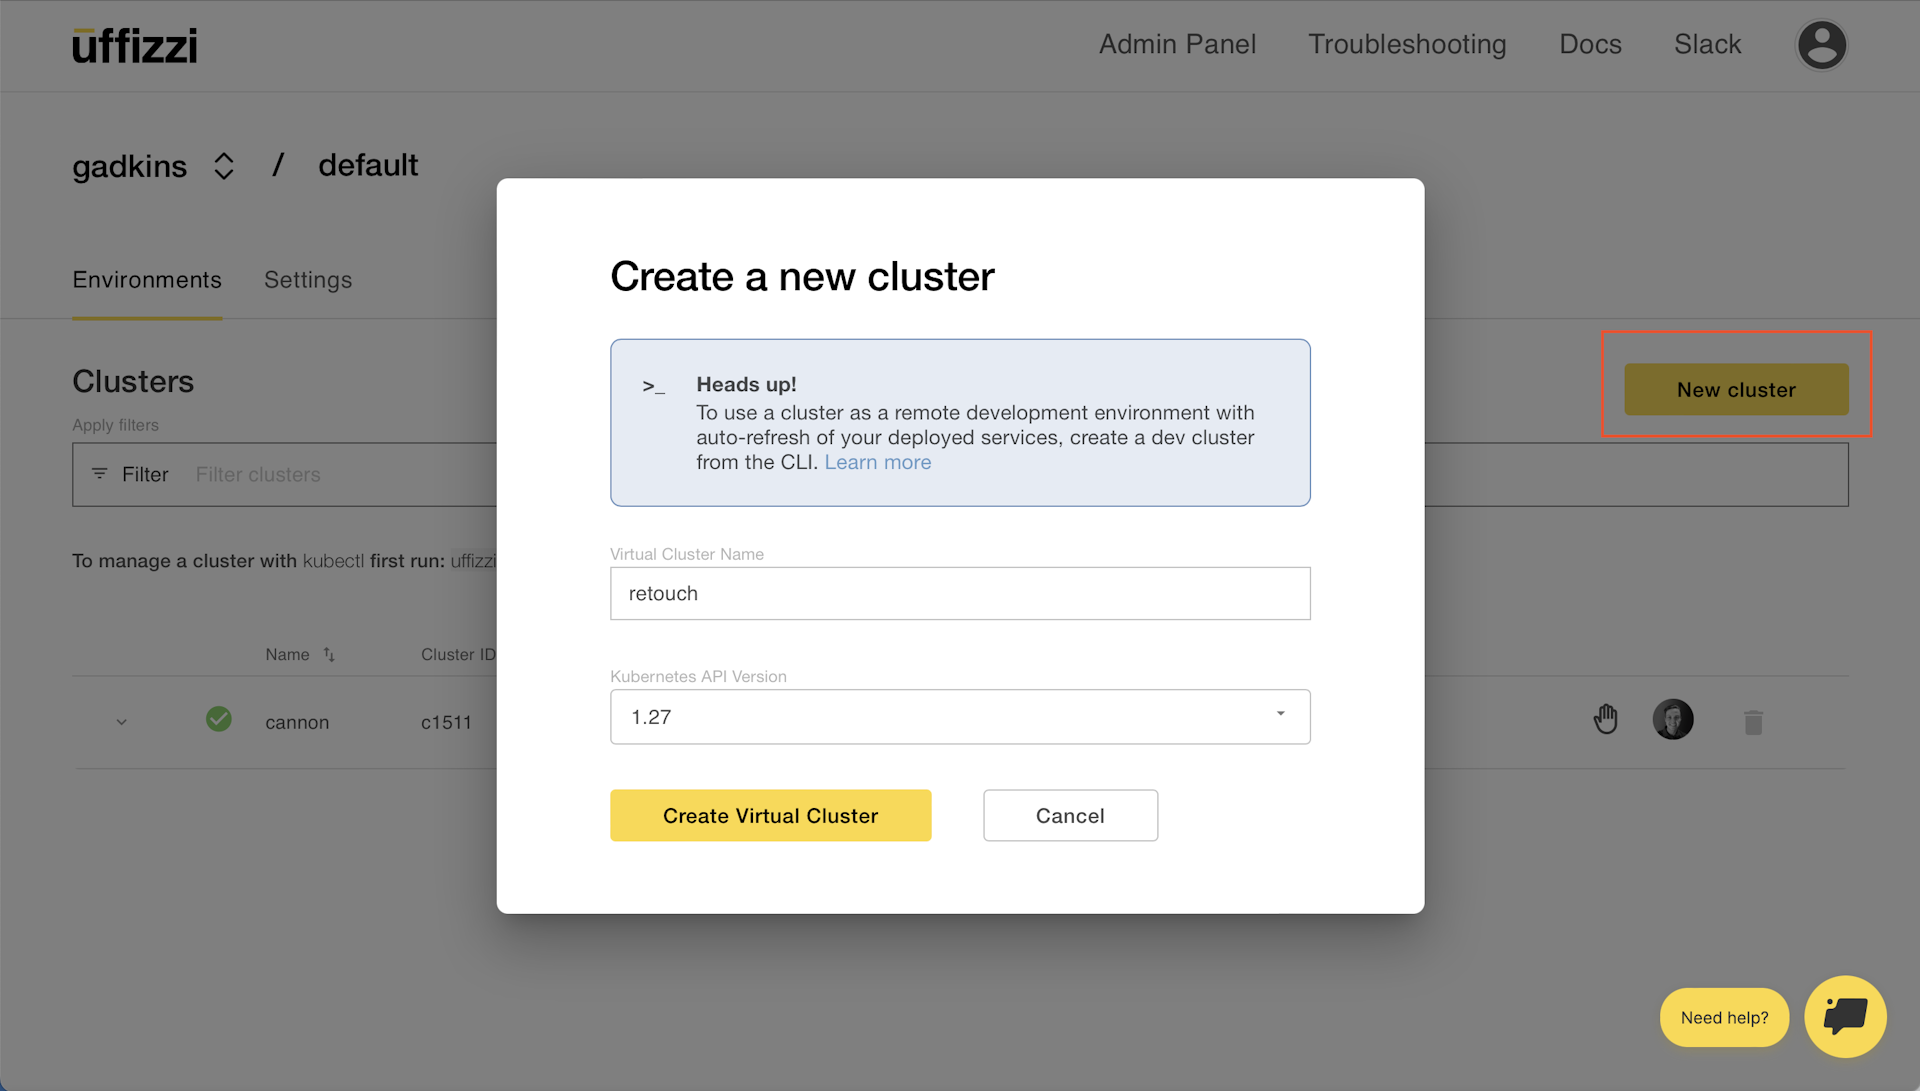 Uffizzi Cloud Dashboard: Create a new cluster